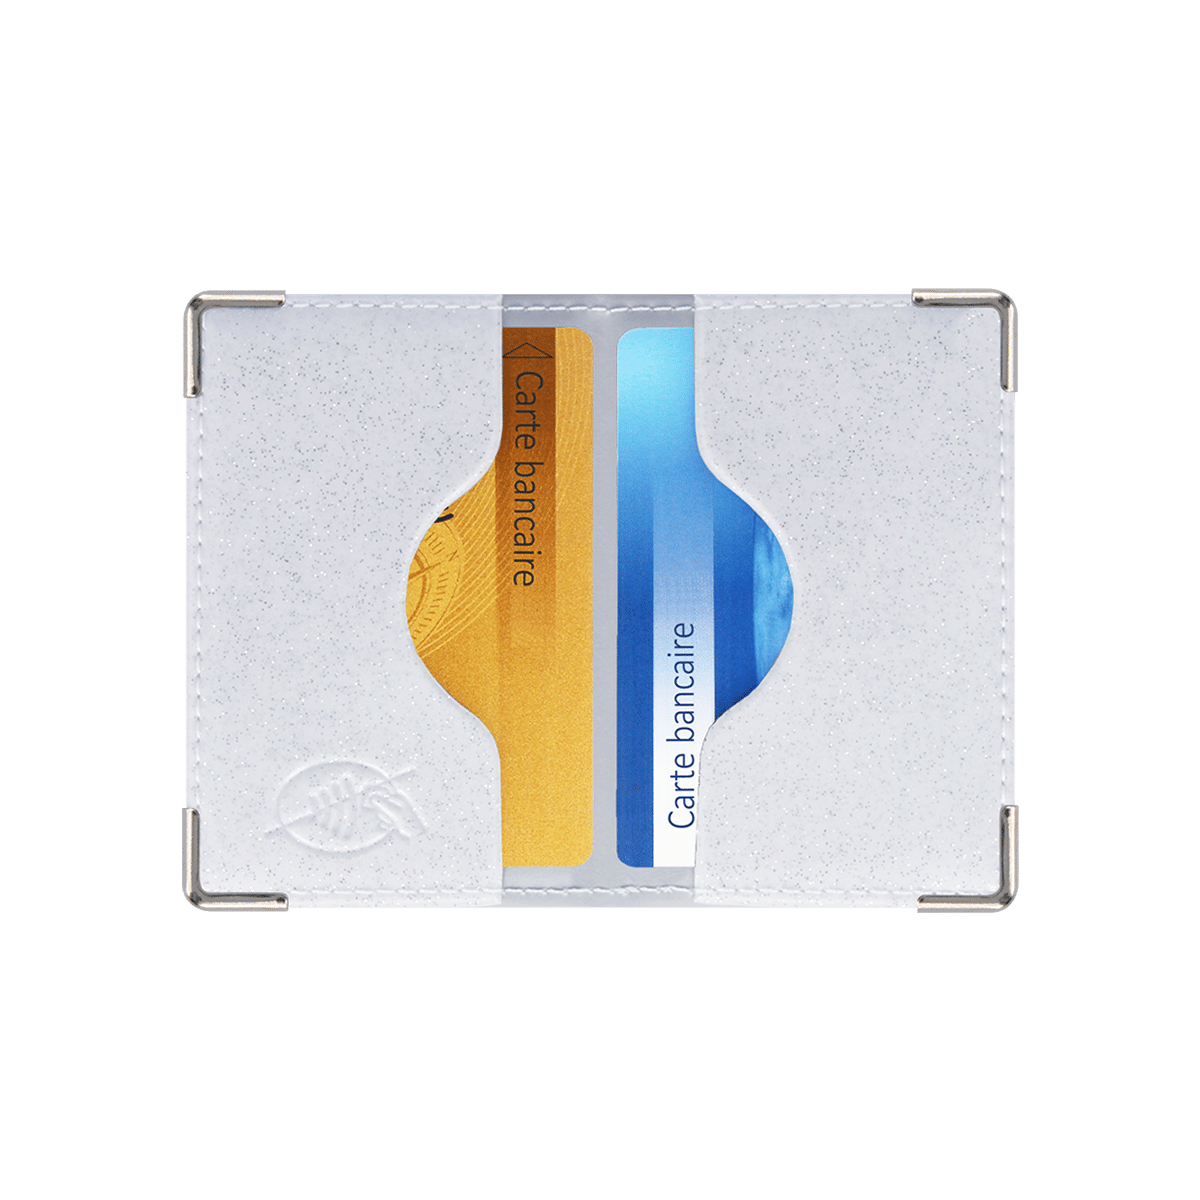 Porte-cartes vernis (72) - Color Pop (Auxence) - Maroquinerie Française  Livraison gratuite